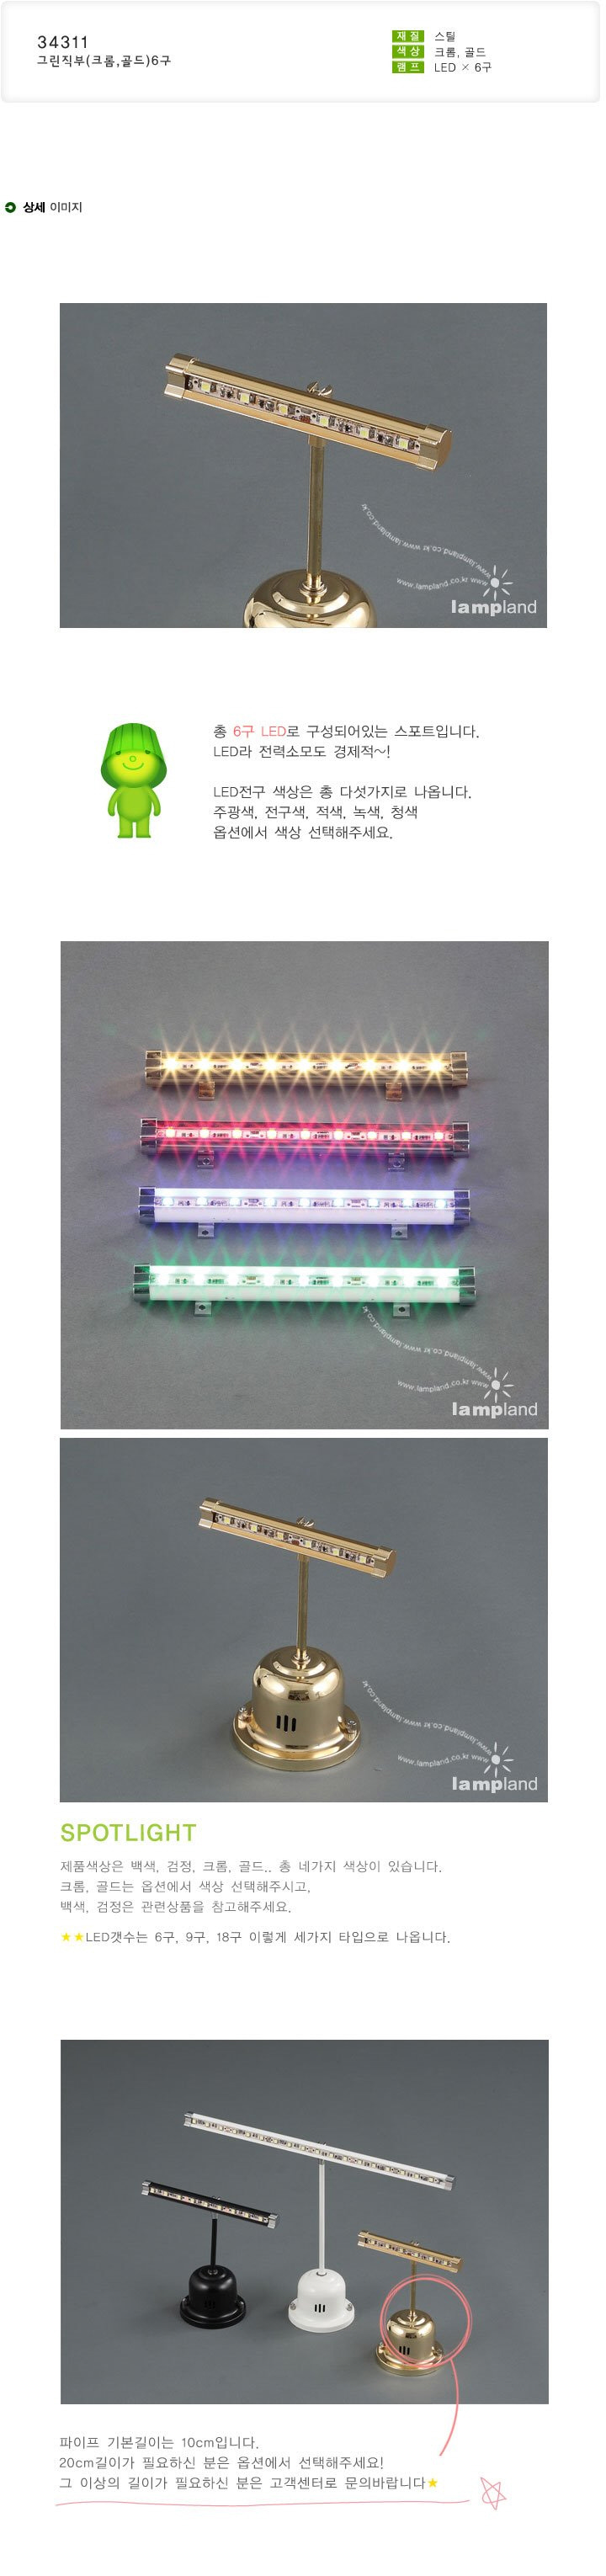 [LED]KS-026 그린 6구 직부(크롬,백색,골드,흑색)